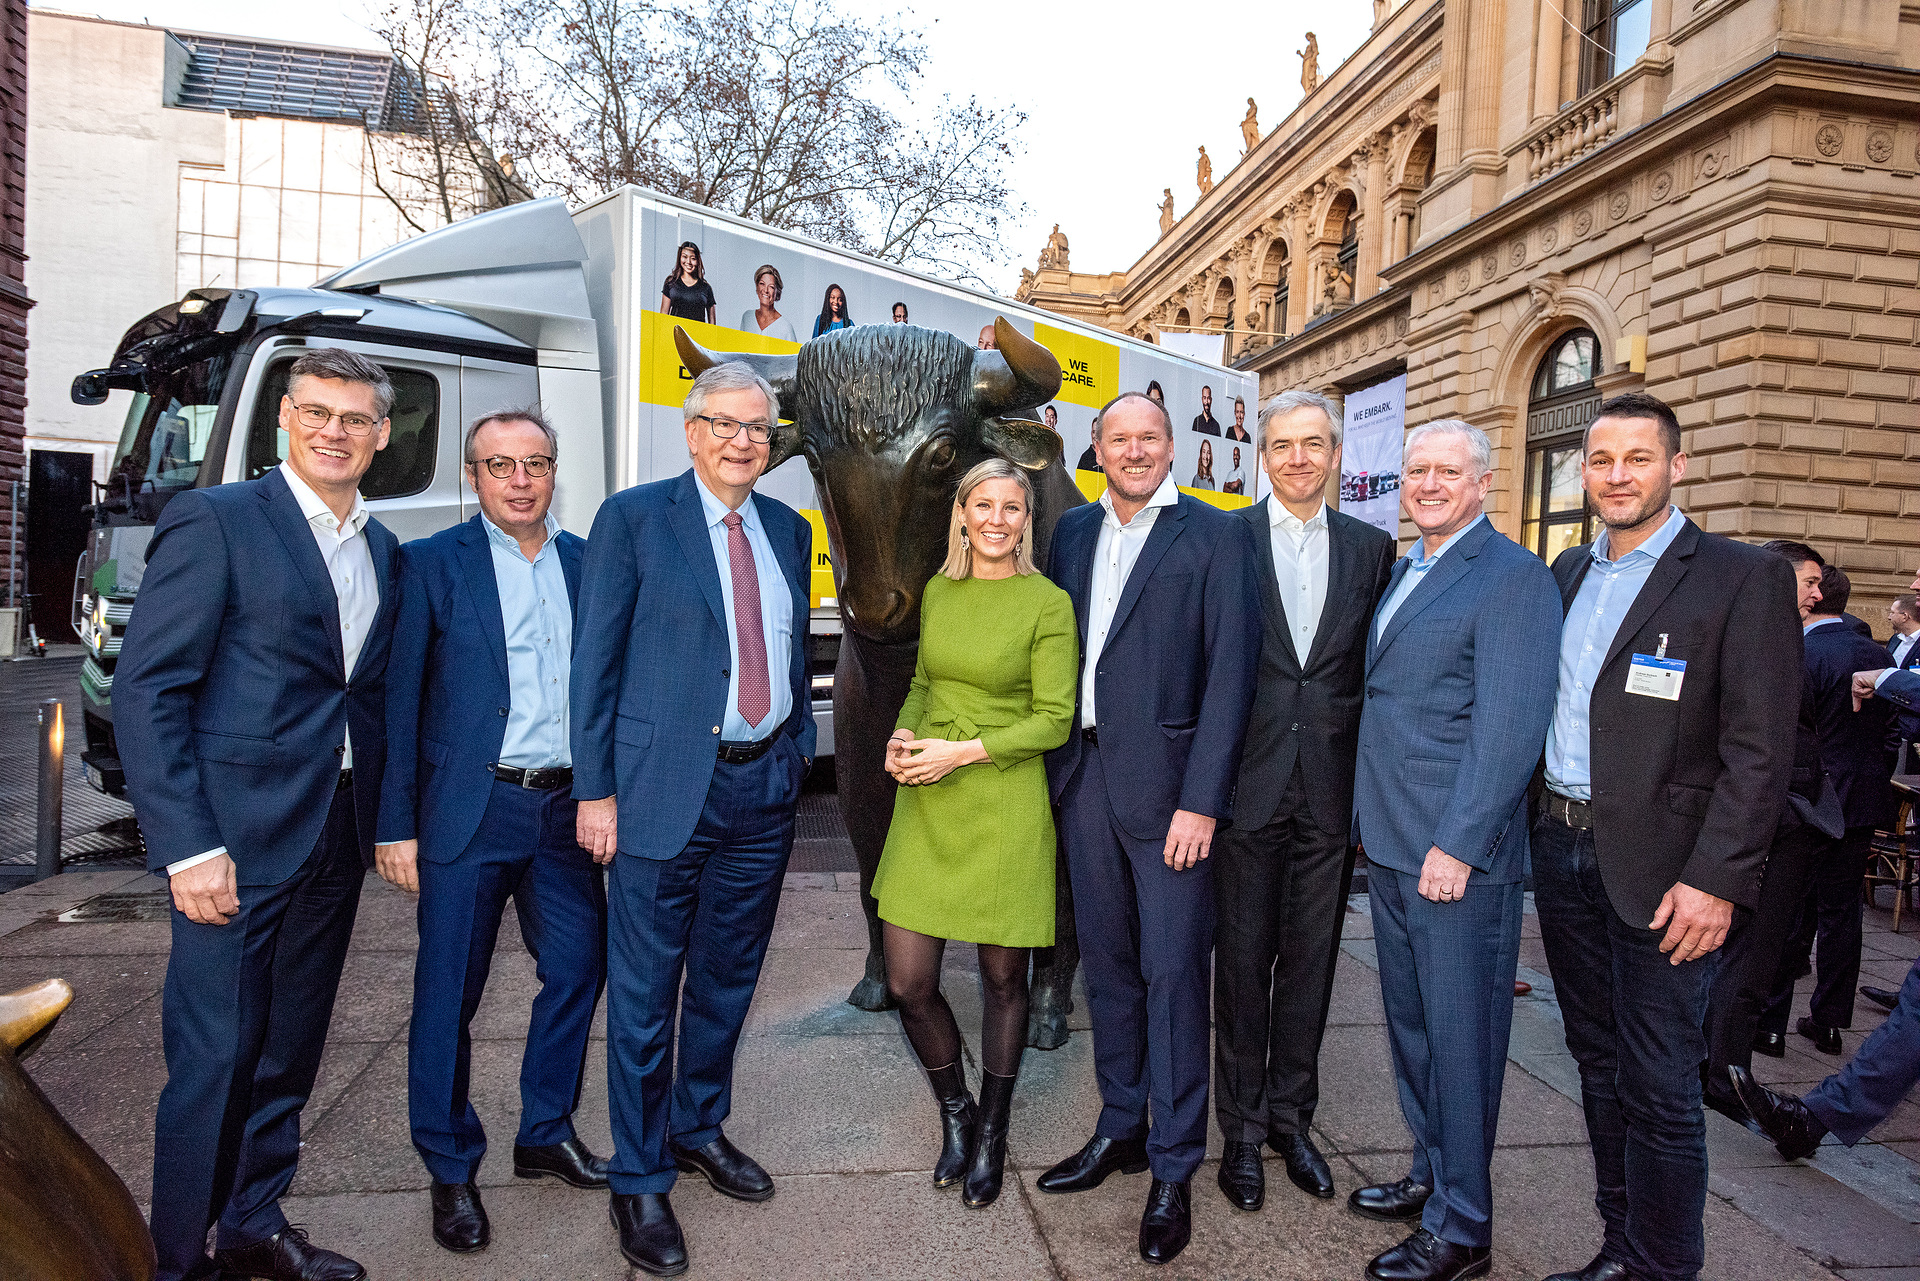 Daimler Truck als eigenständiges Unternehmen an der Börse gestartet